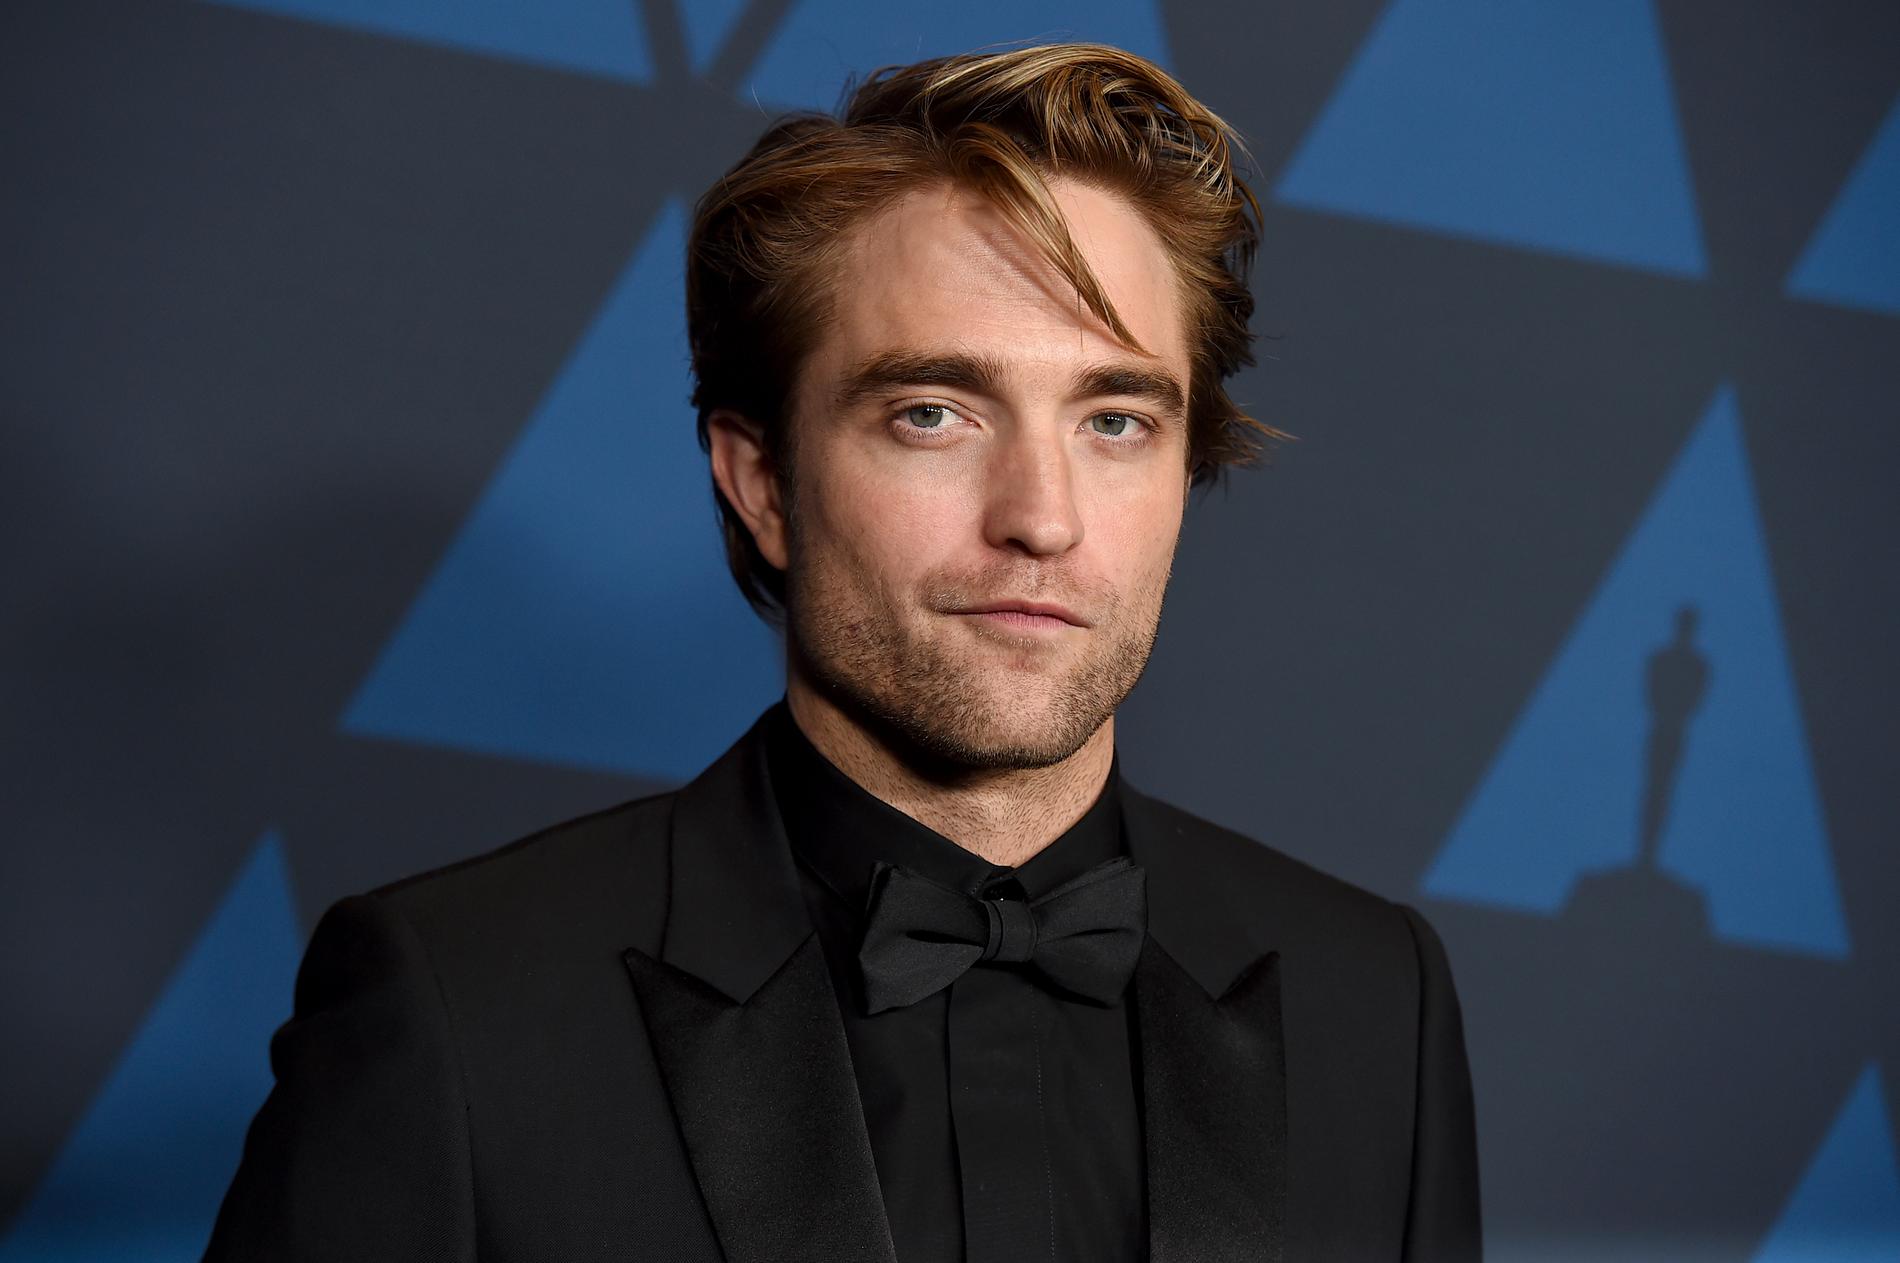 Robert Pattinson ska spela Batman i den nya filmen om superhjälten, vars premiär nu skjuts upp igen. Arkivbild.